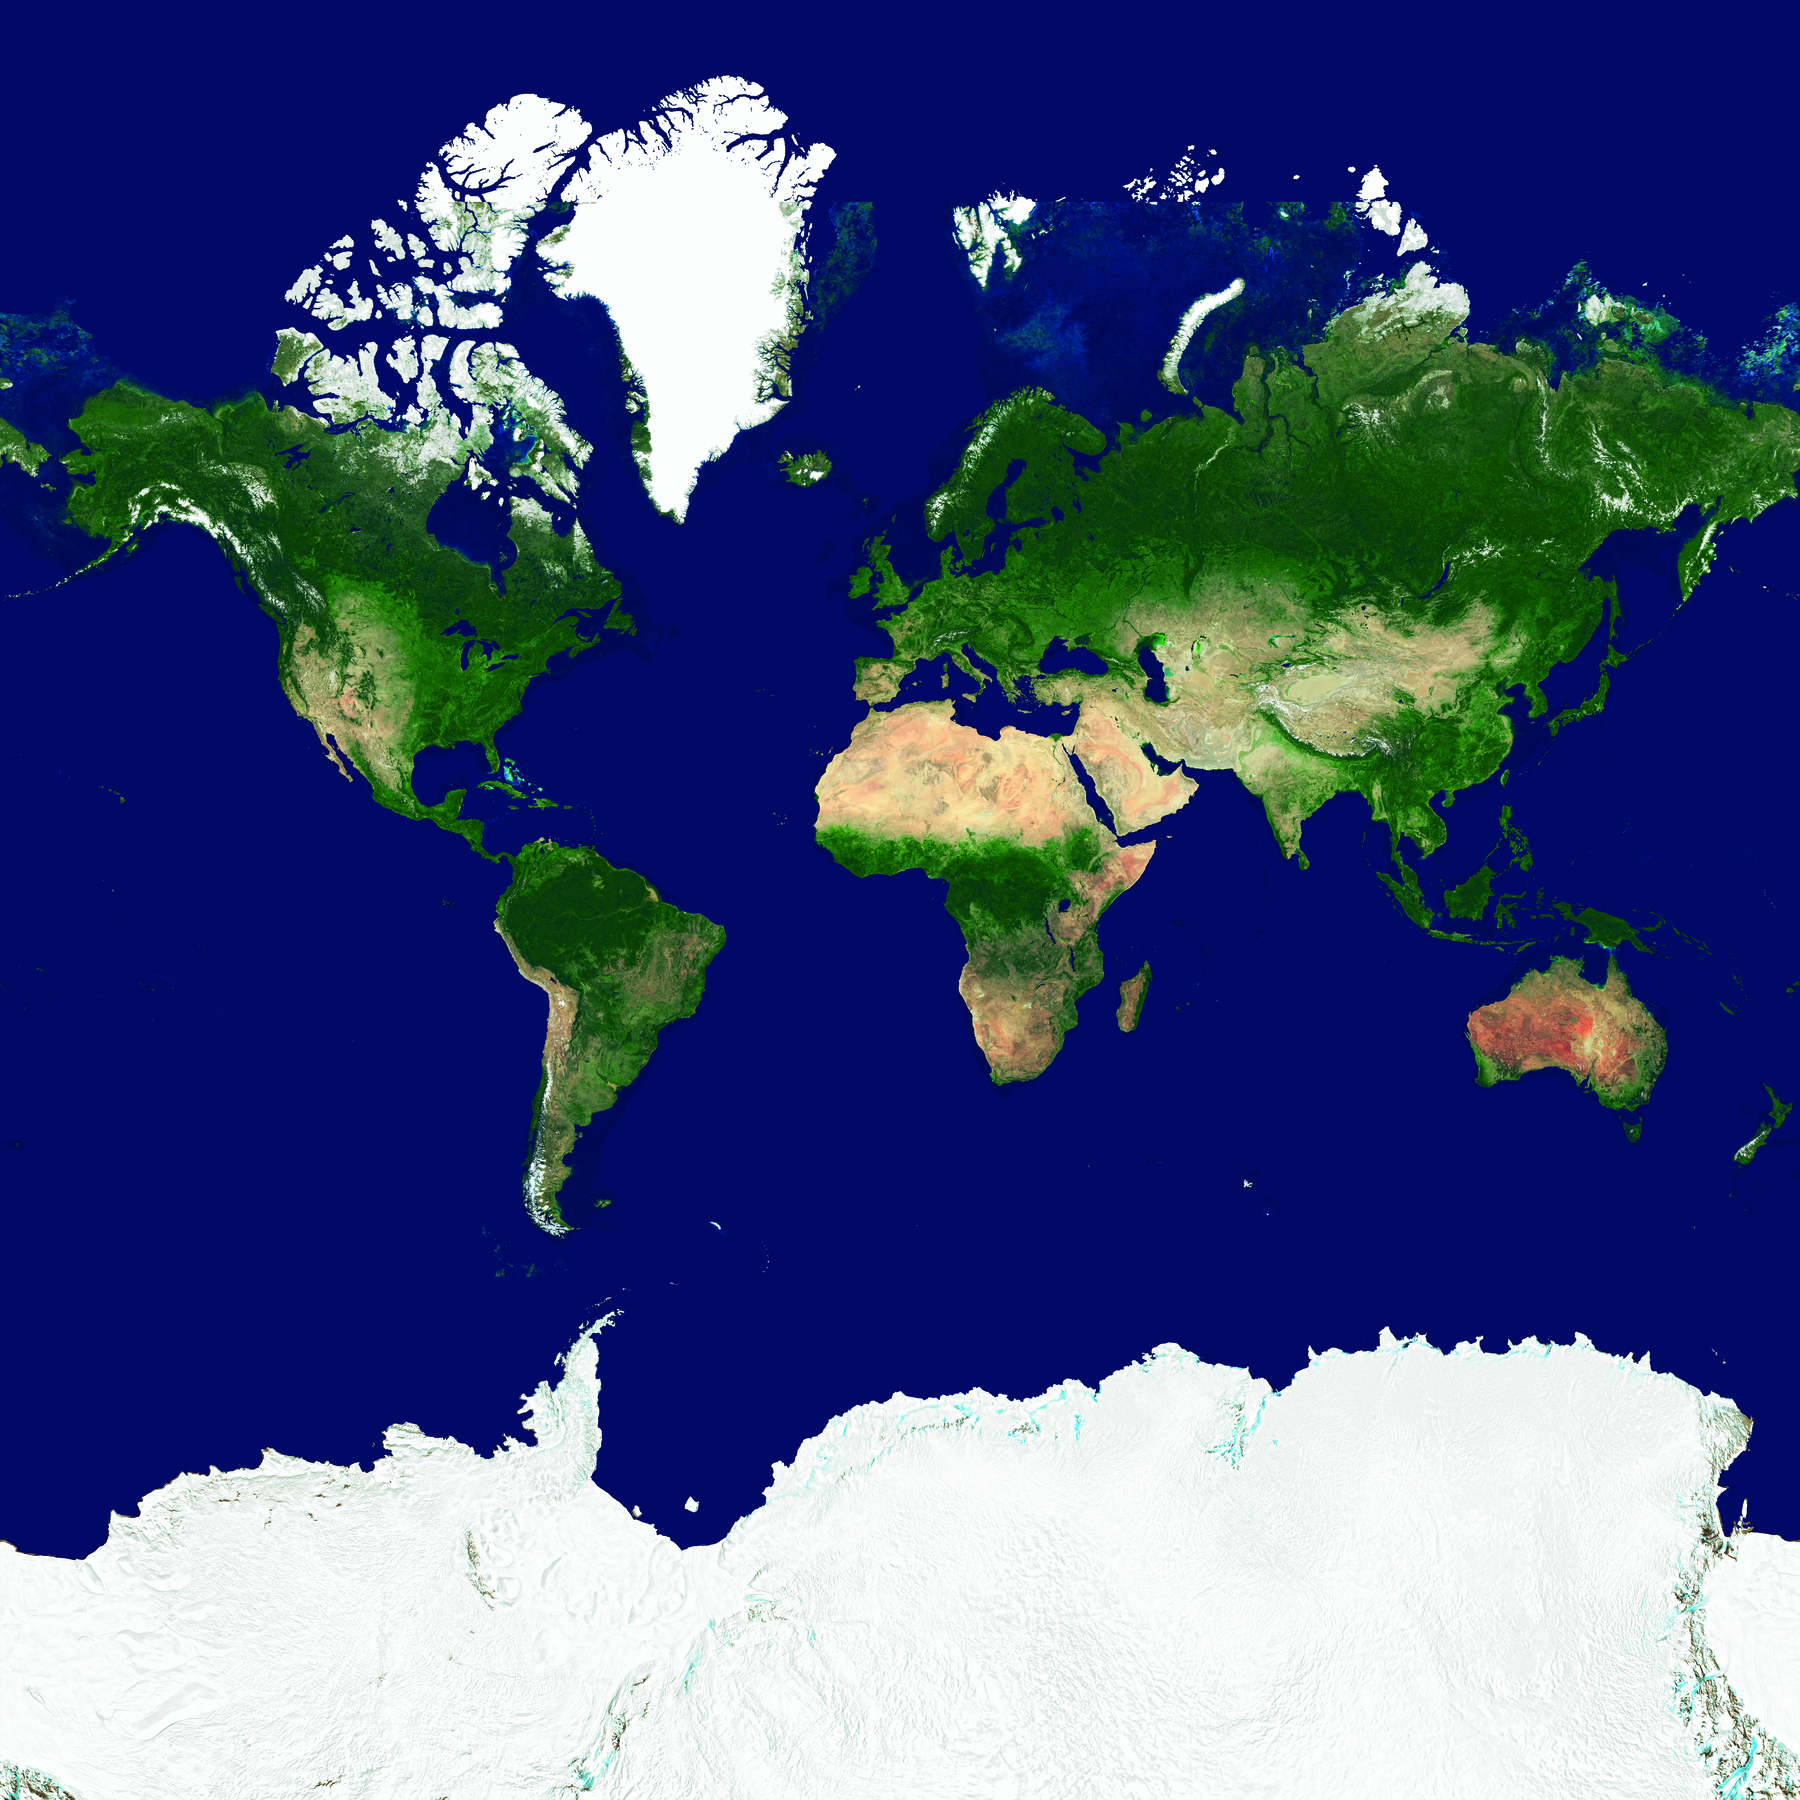 Mapa. Planificação do globo terrestre, representando os continentes nas cores verde (áreas com vegetação) e marrom (áreas áridas e desérticas). Nas partes superior e inferior, os polos norte e sul, que são cobertos de gelo, são representados em branco, e o oceano é representado em azul.